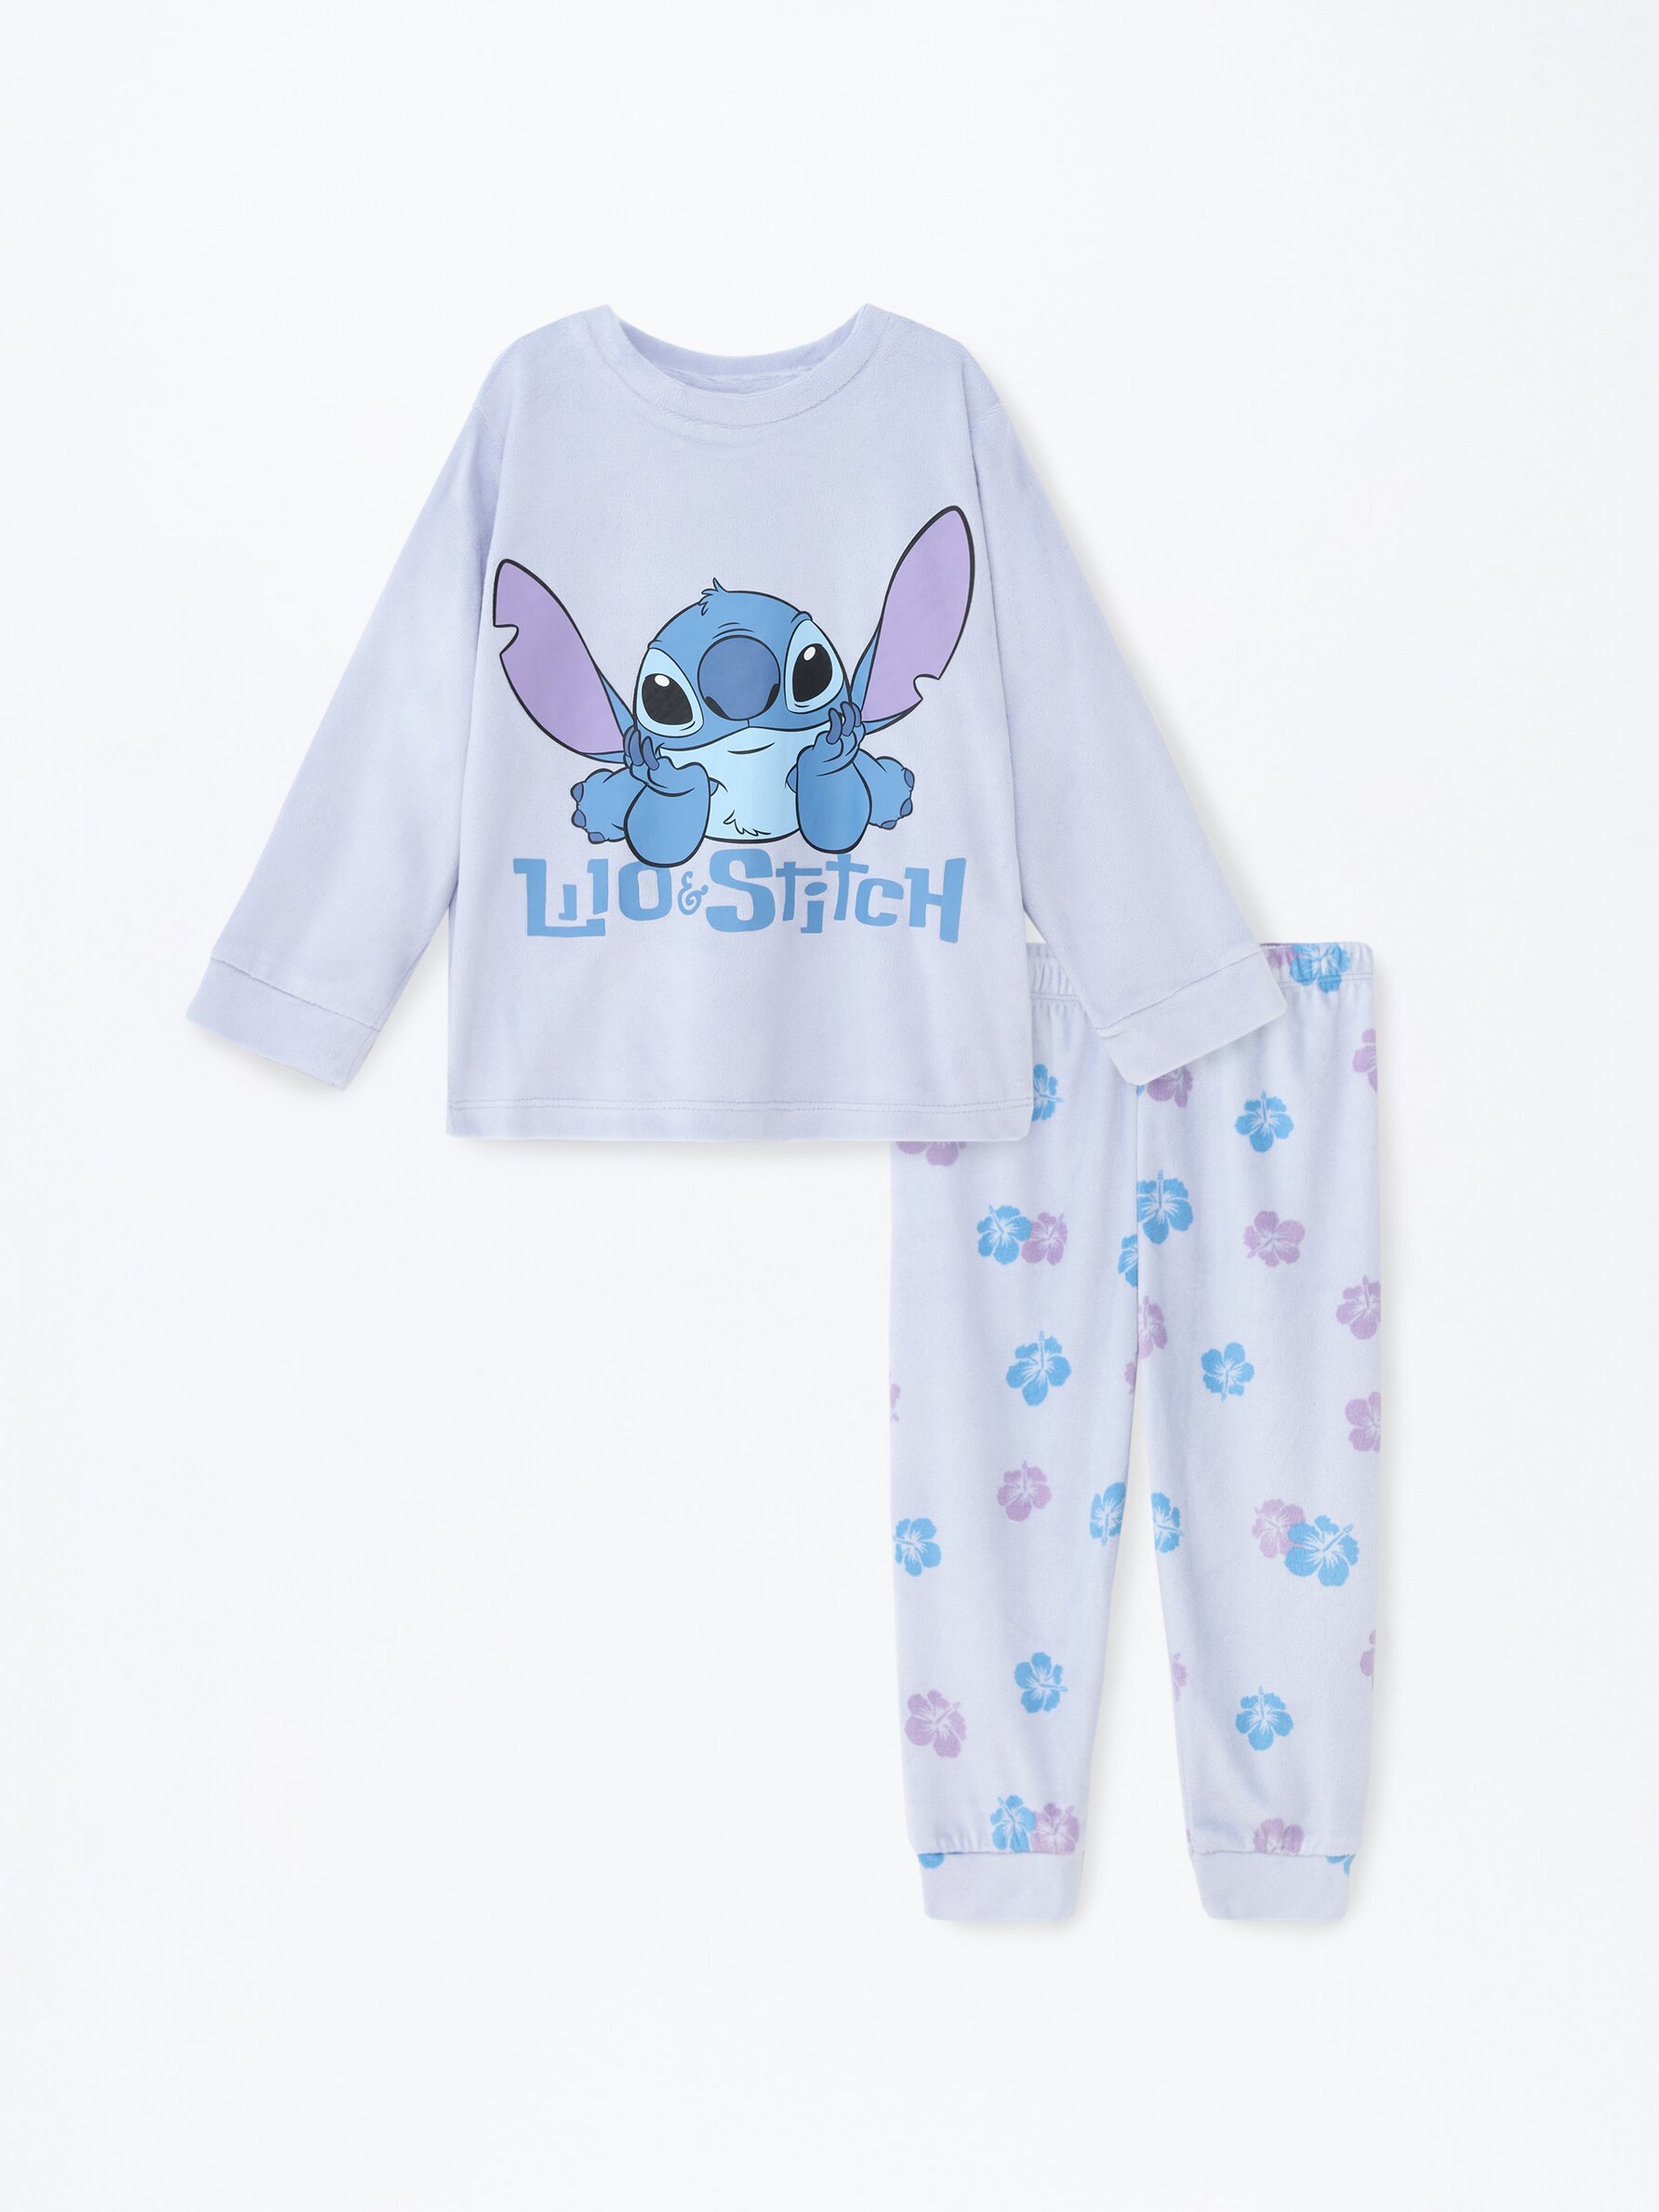 Disney-Pijama de una pieza de Lilo & Stitch para niños y niñas